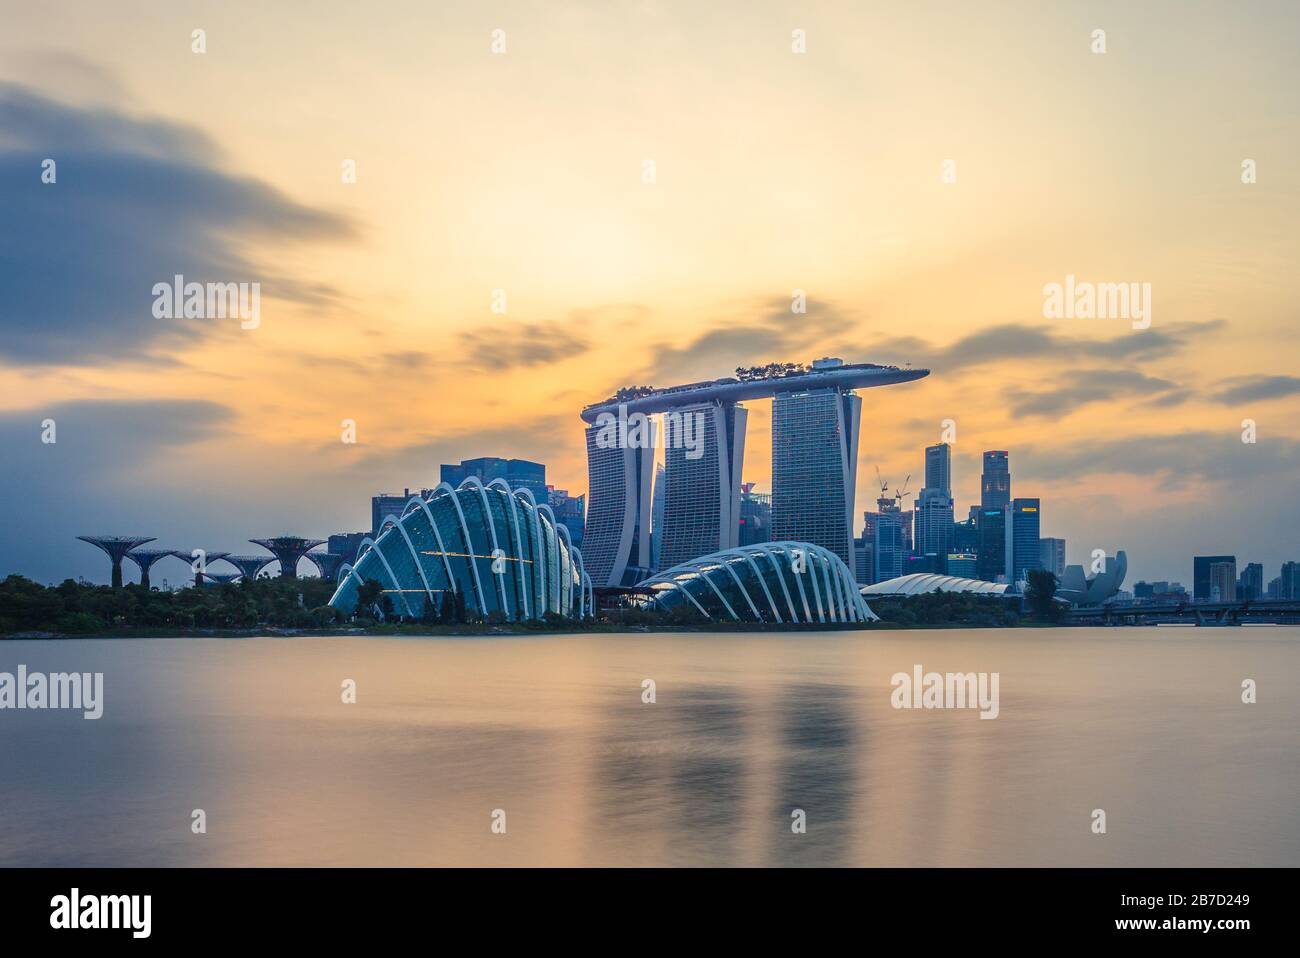 Singapur - 4. Februar 2020: Skyline von singapur an der Marina Bay mit ikonischem Gebäude wie Supertree, Marina Bay Sands, kunstwissenschaftlichem Museum. Stockfoto